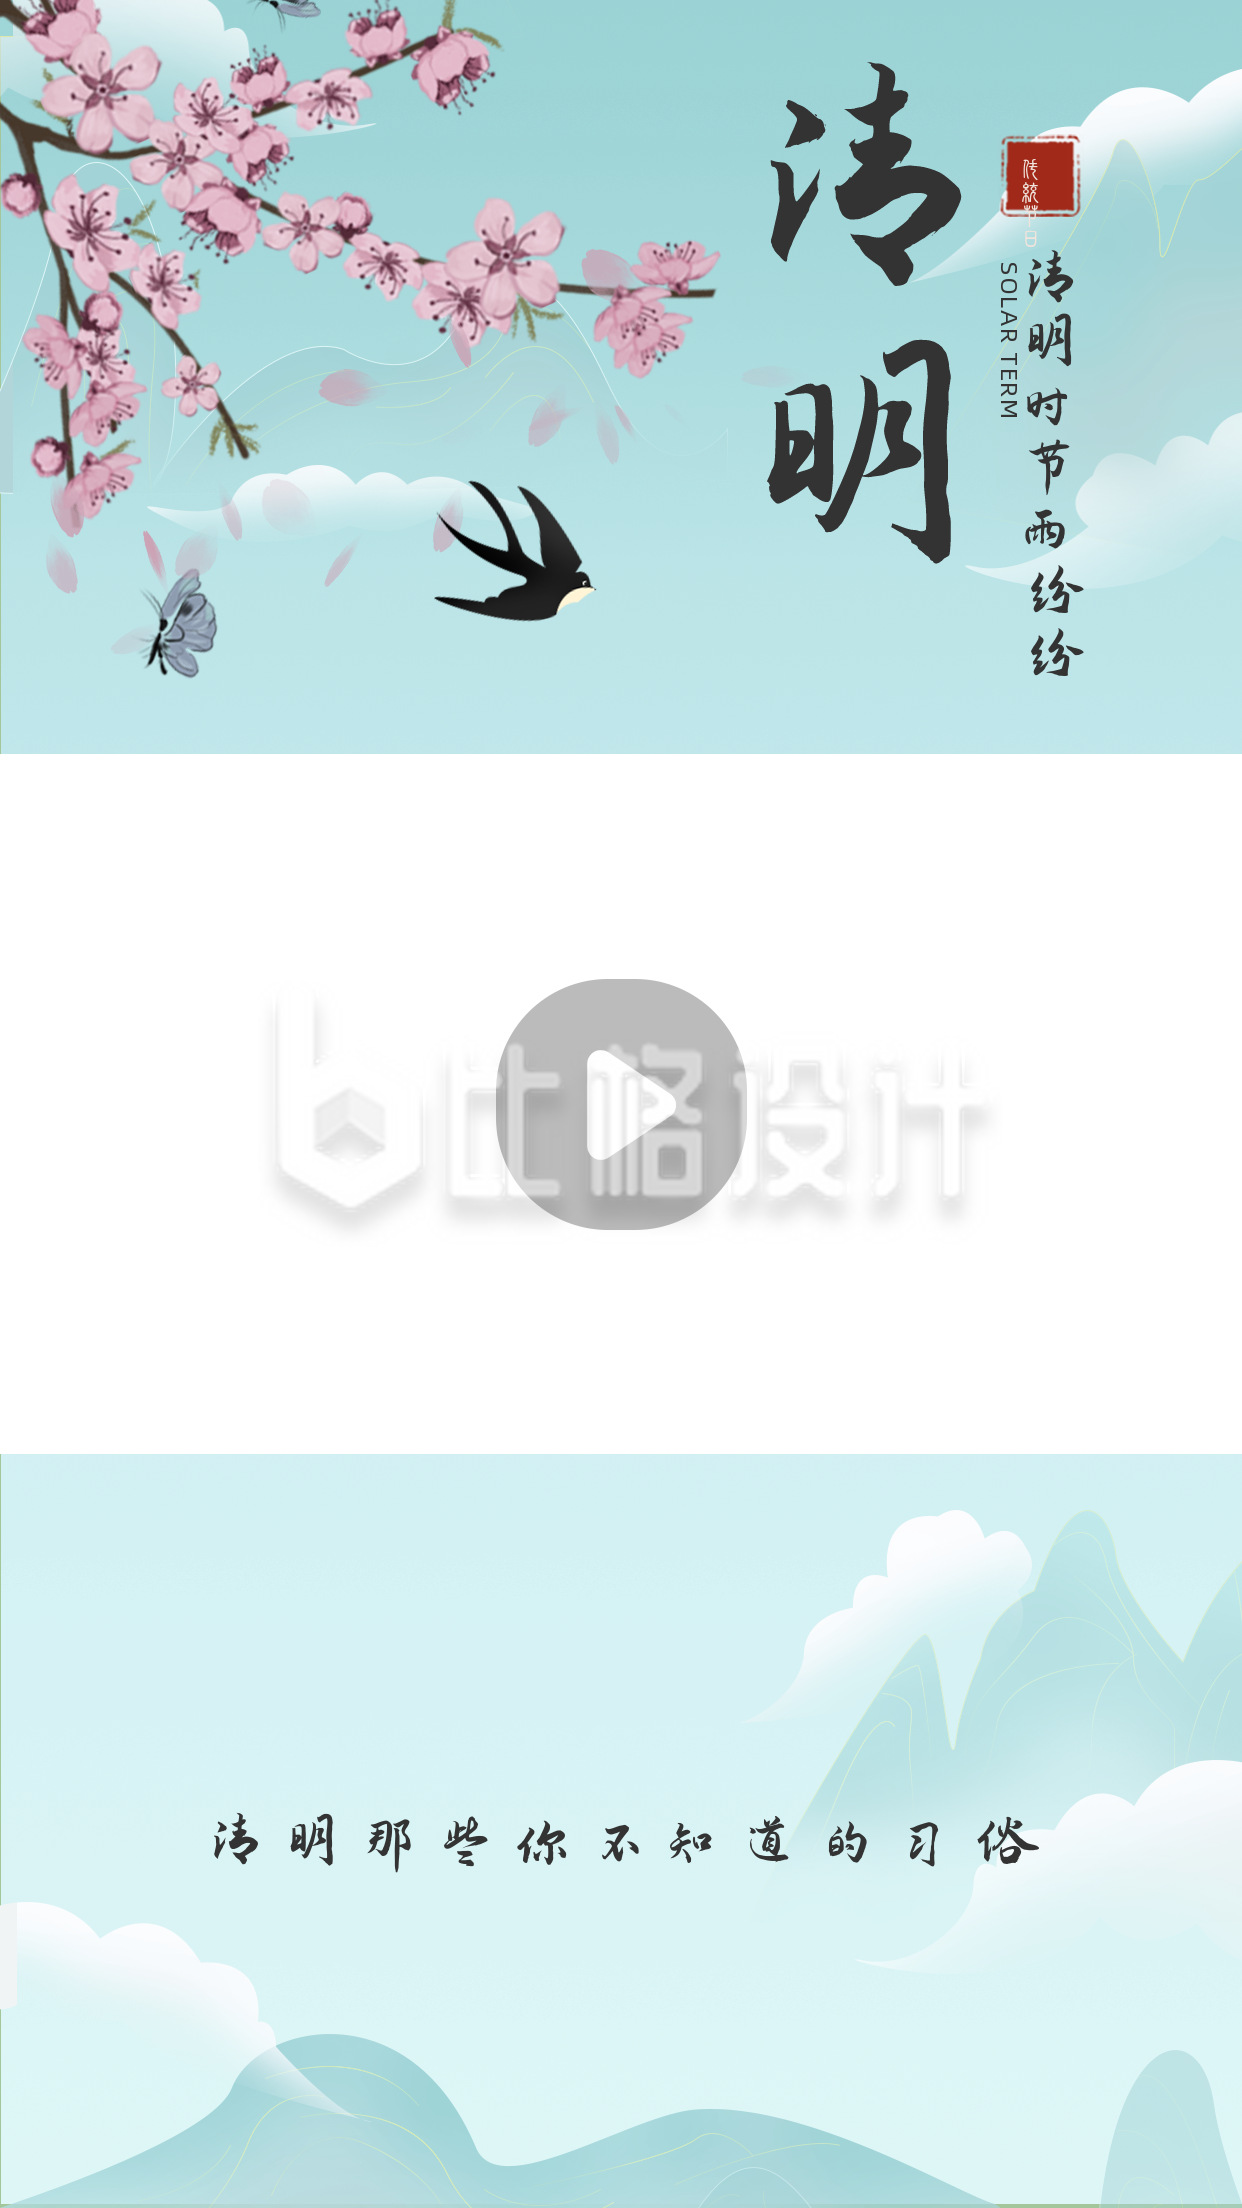 清明节手绘古风习俗科普视频边框